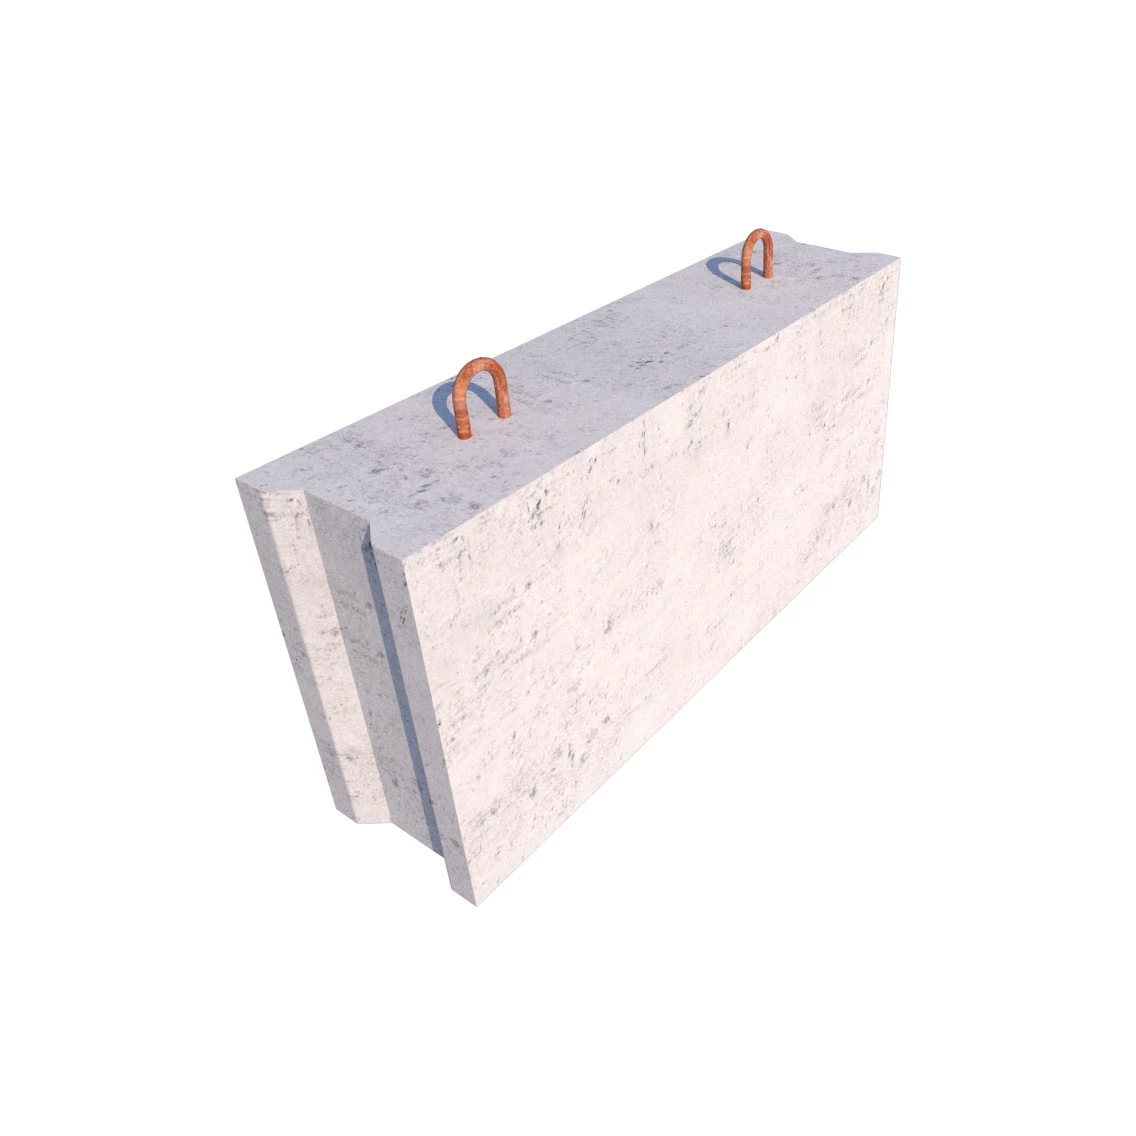 бетонные блоки цена, блок бетонный фбс, бетонные блоки фбс купить, блок бетонный фбс 24 6 6, блок бетонный фбс 9 4 6 т, бетонные блоки фбс размеры, бетонный блок фбс цена
